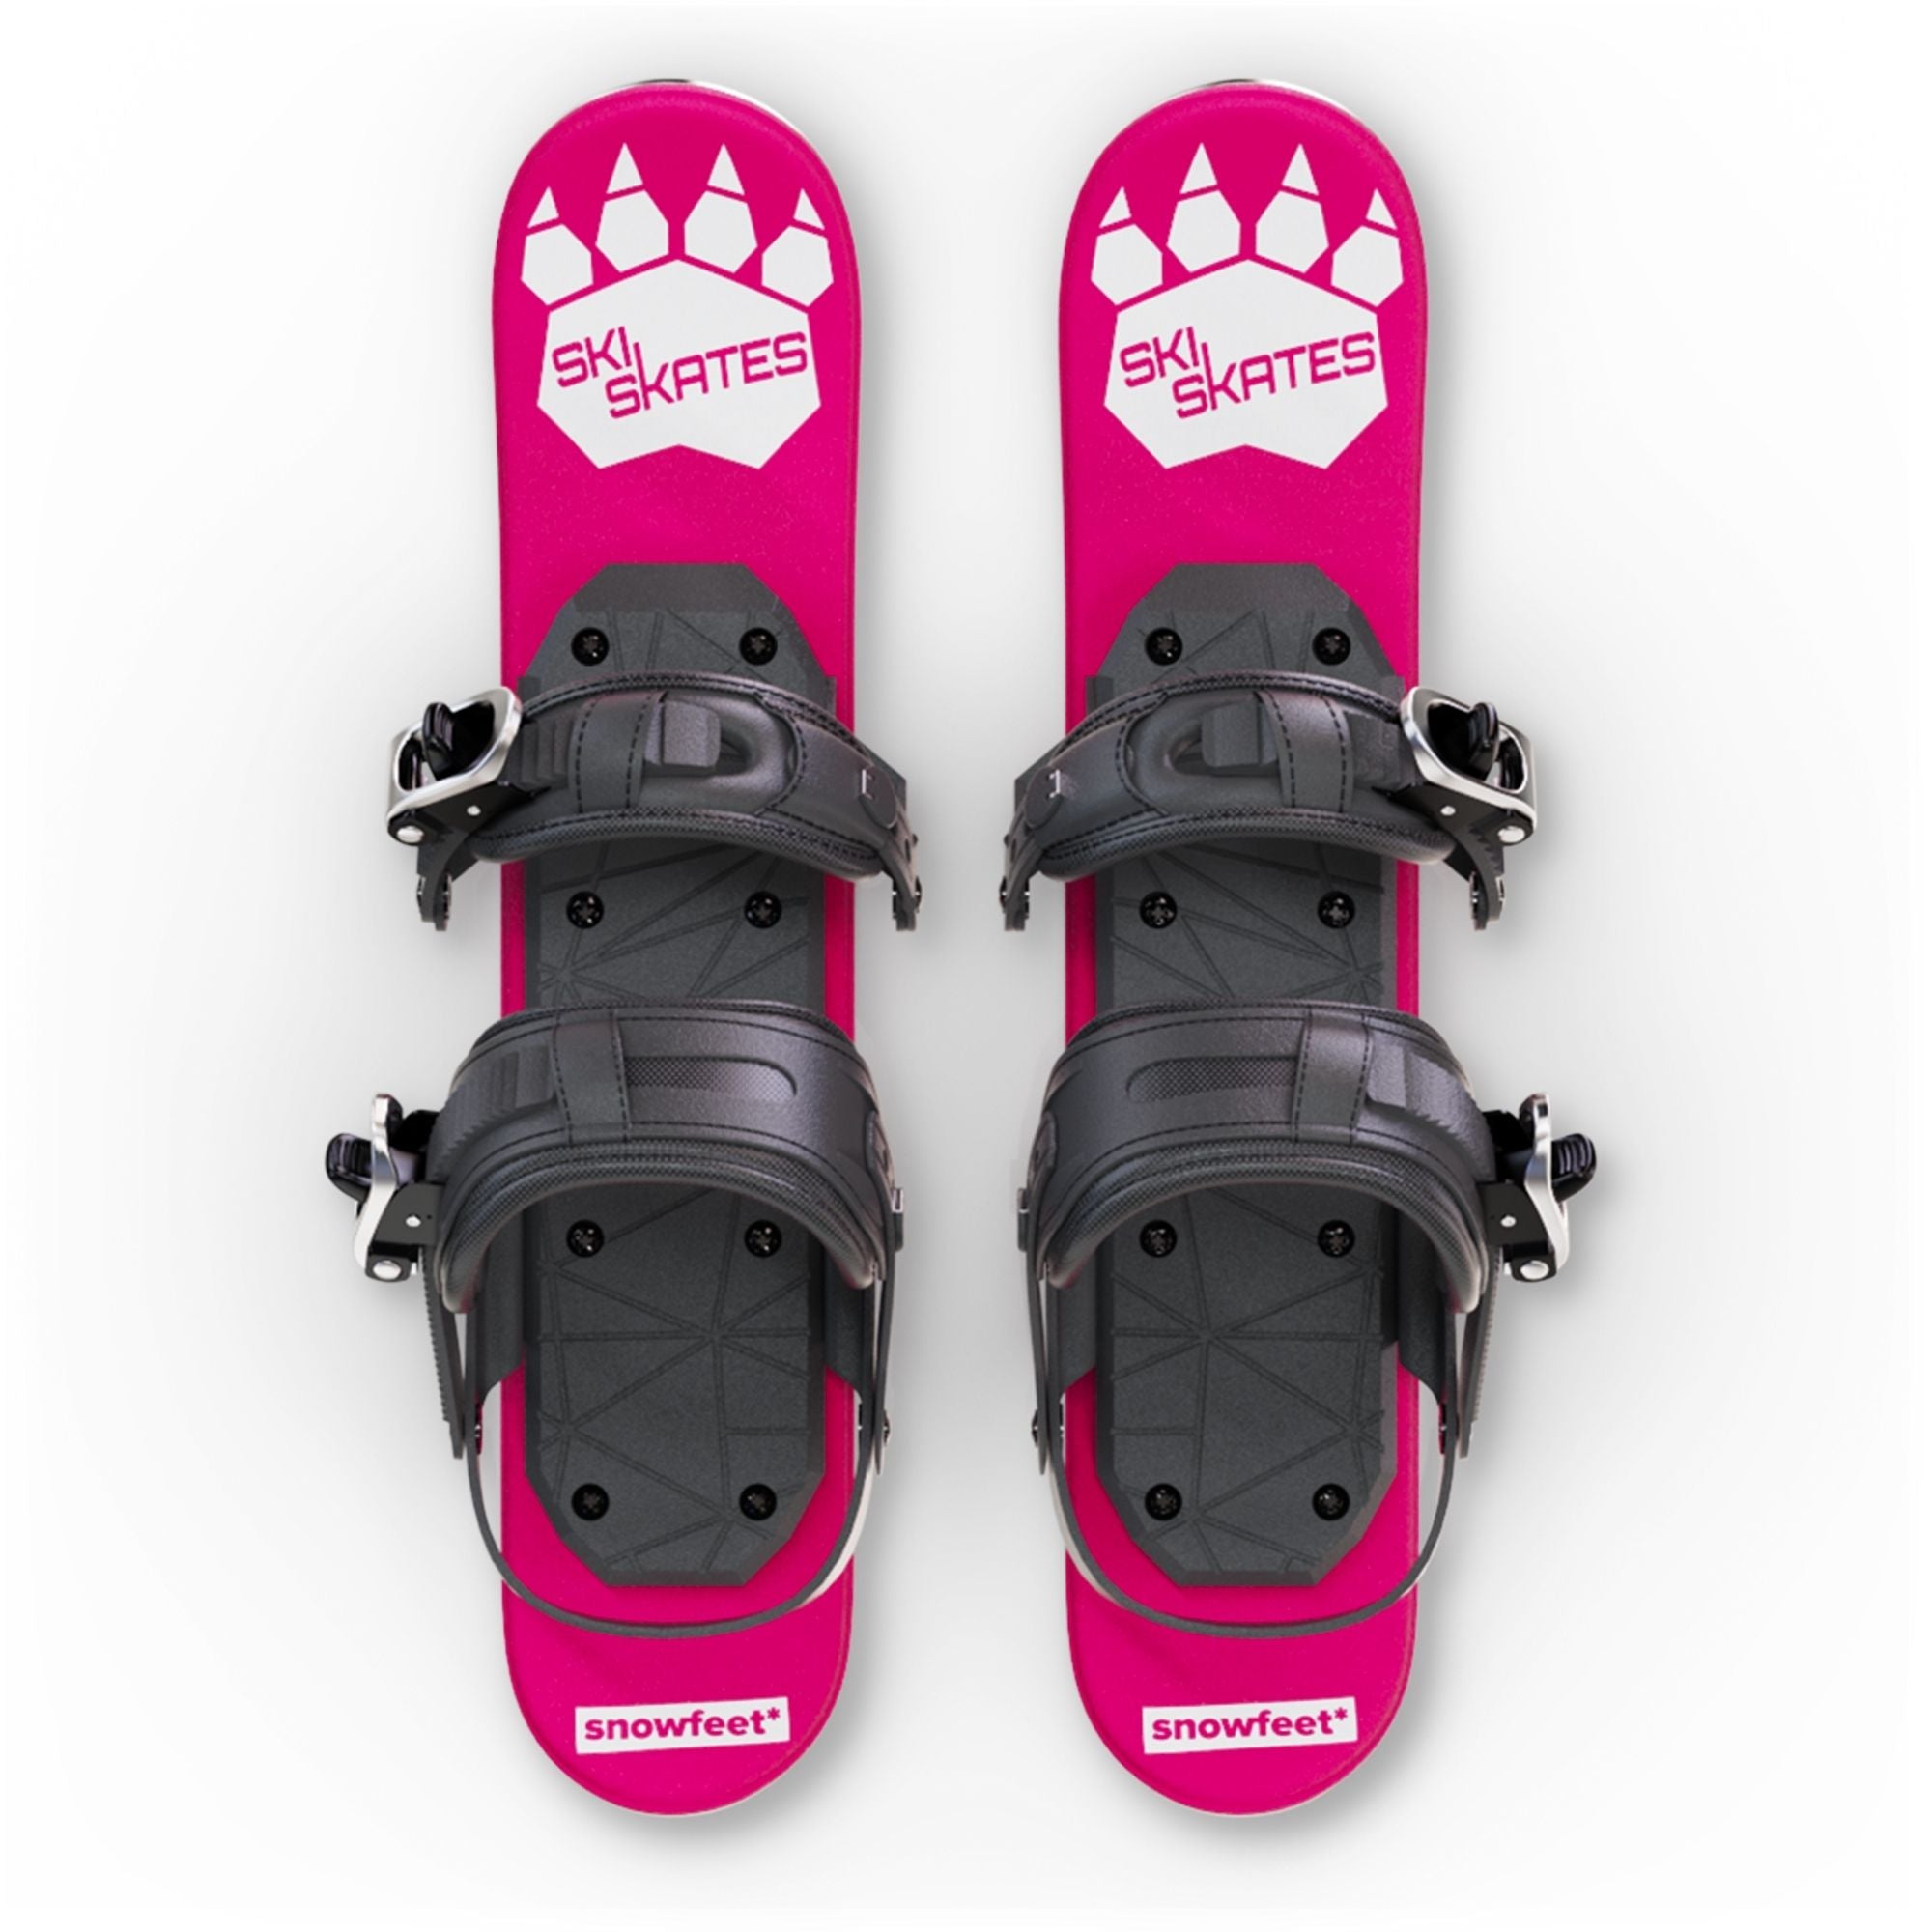 skiskates snowfeet miniski shortski shortestski ski boots snowboard boots shortest ski mini ski short ski 